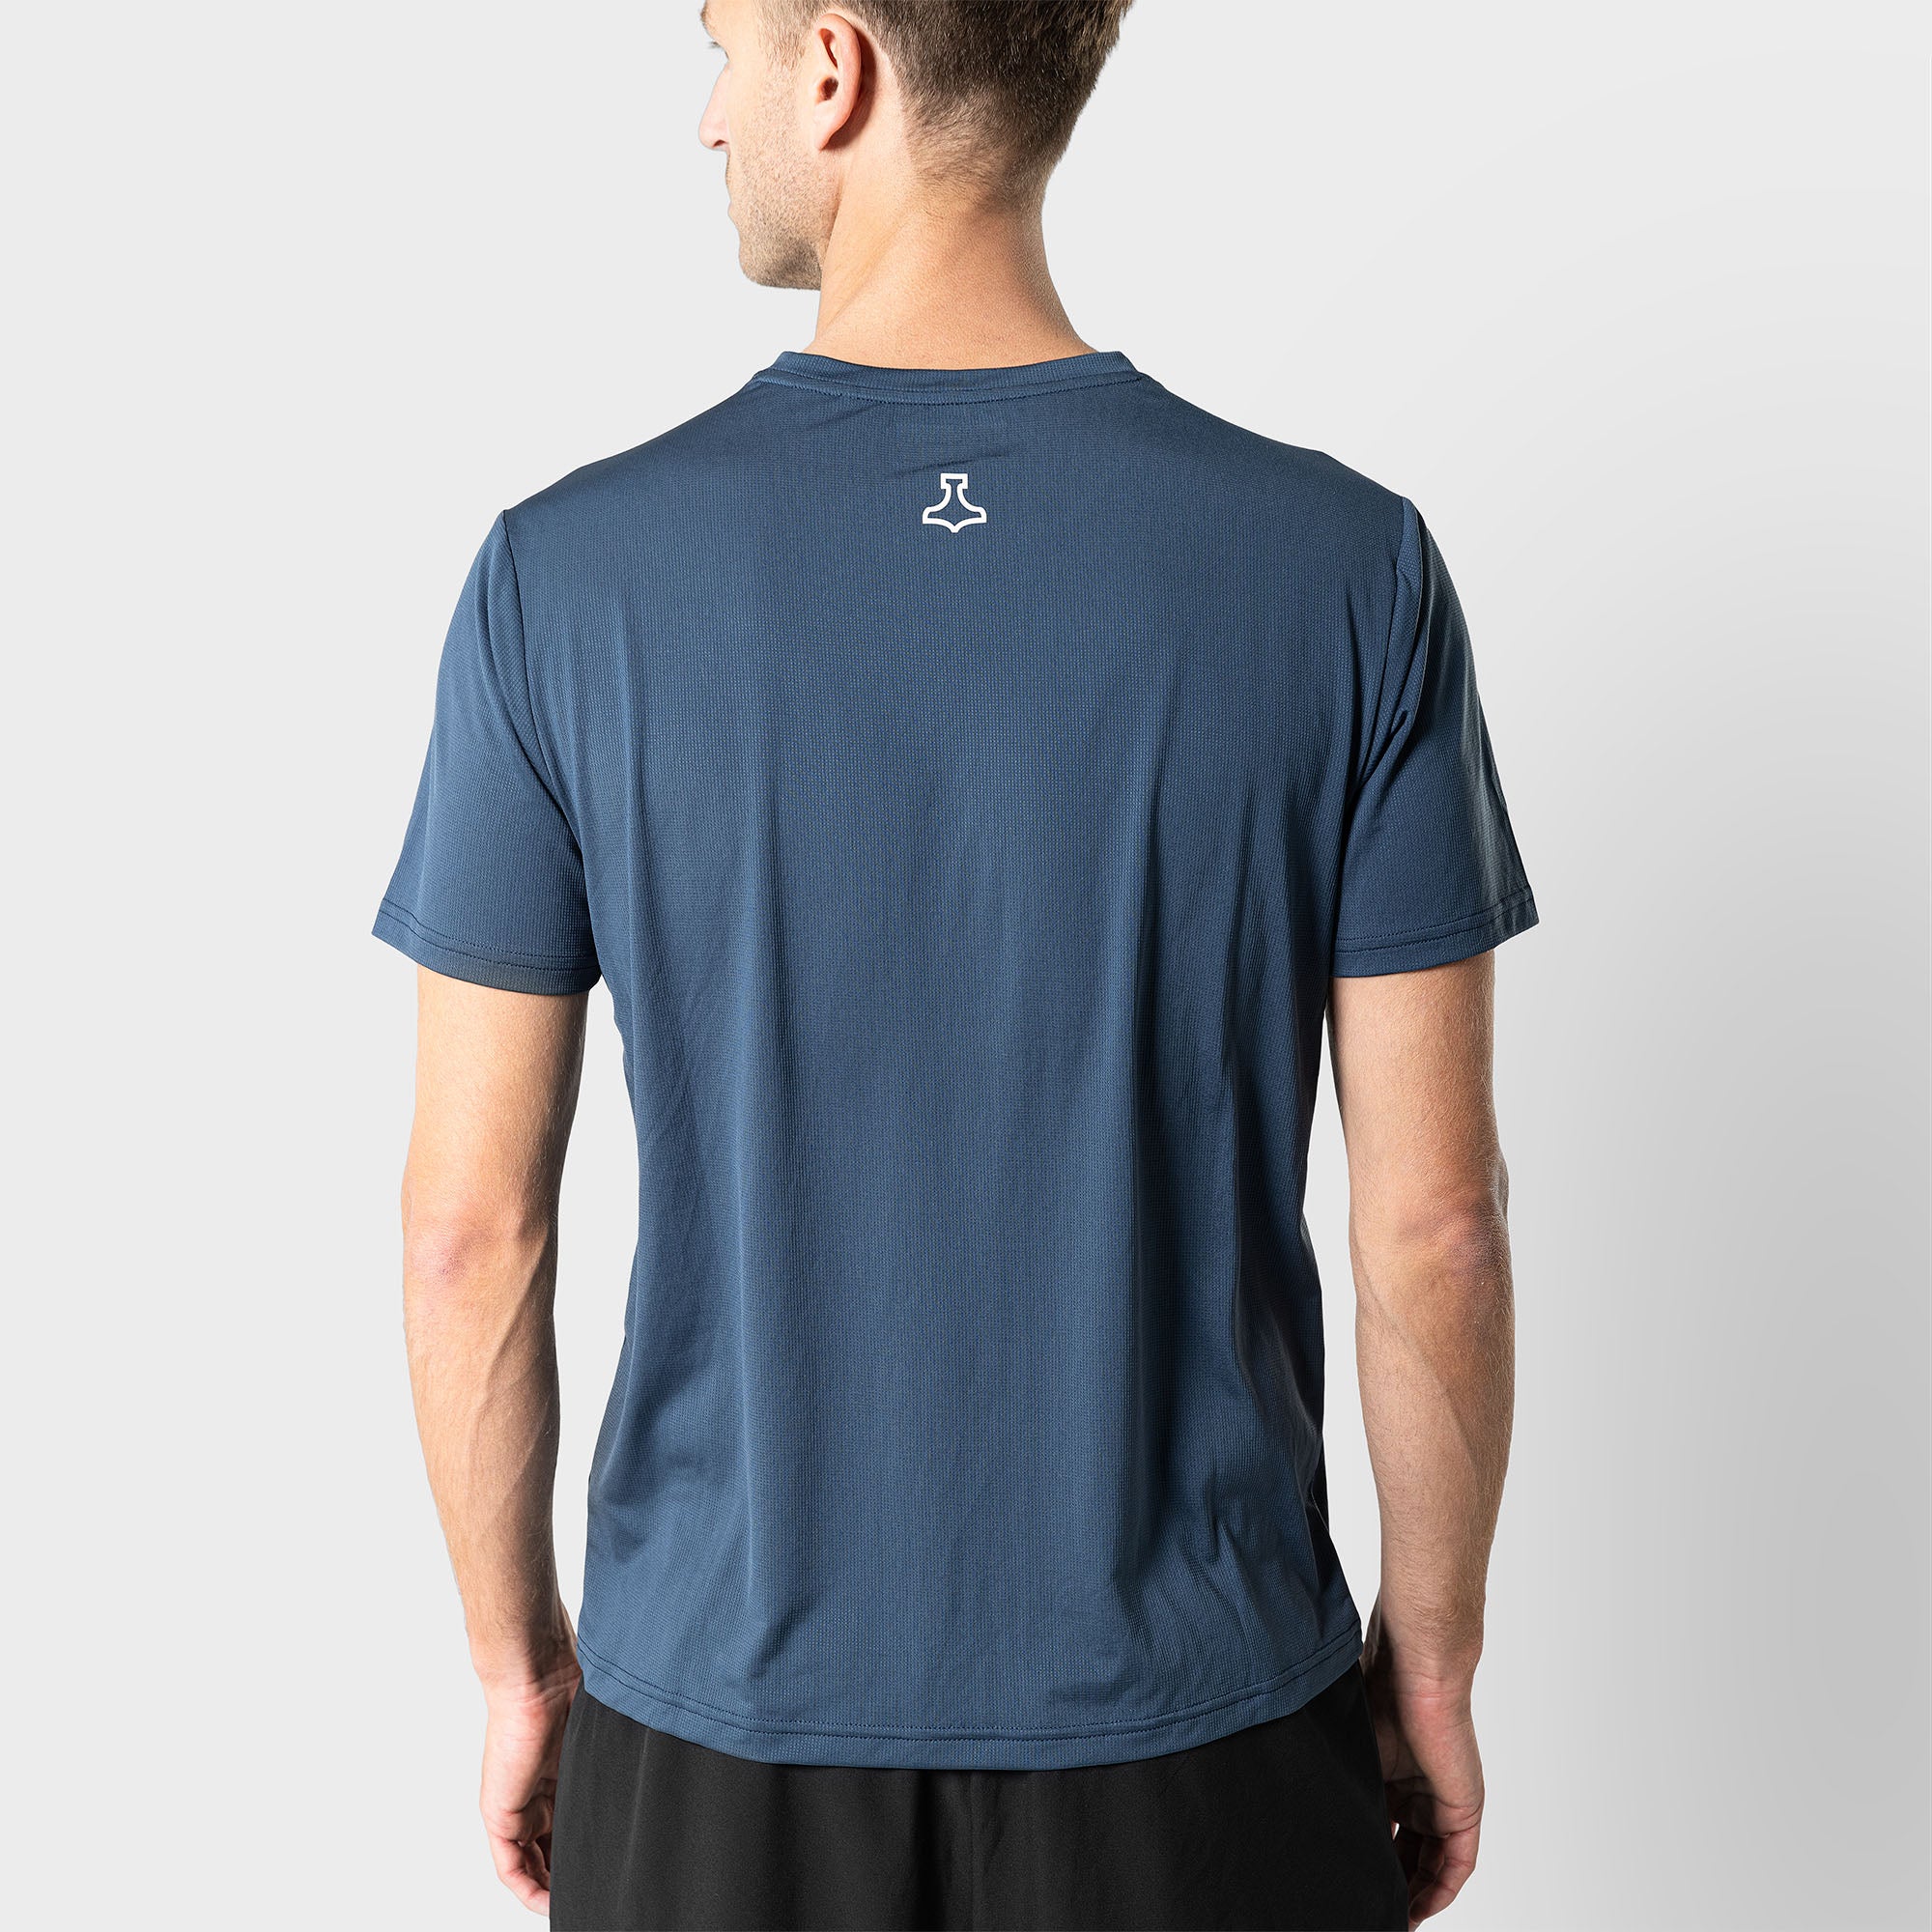 Liiteguard GROUND-TECH T-SHIRT (MEN) T-shirts Dark Navy Blue